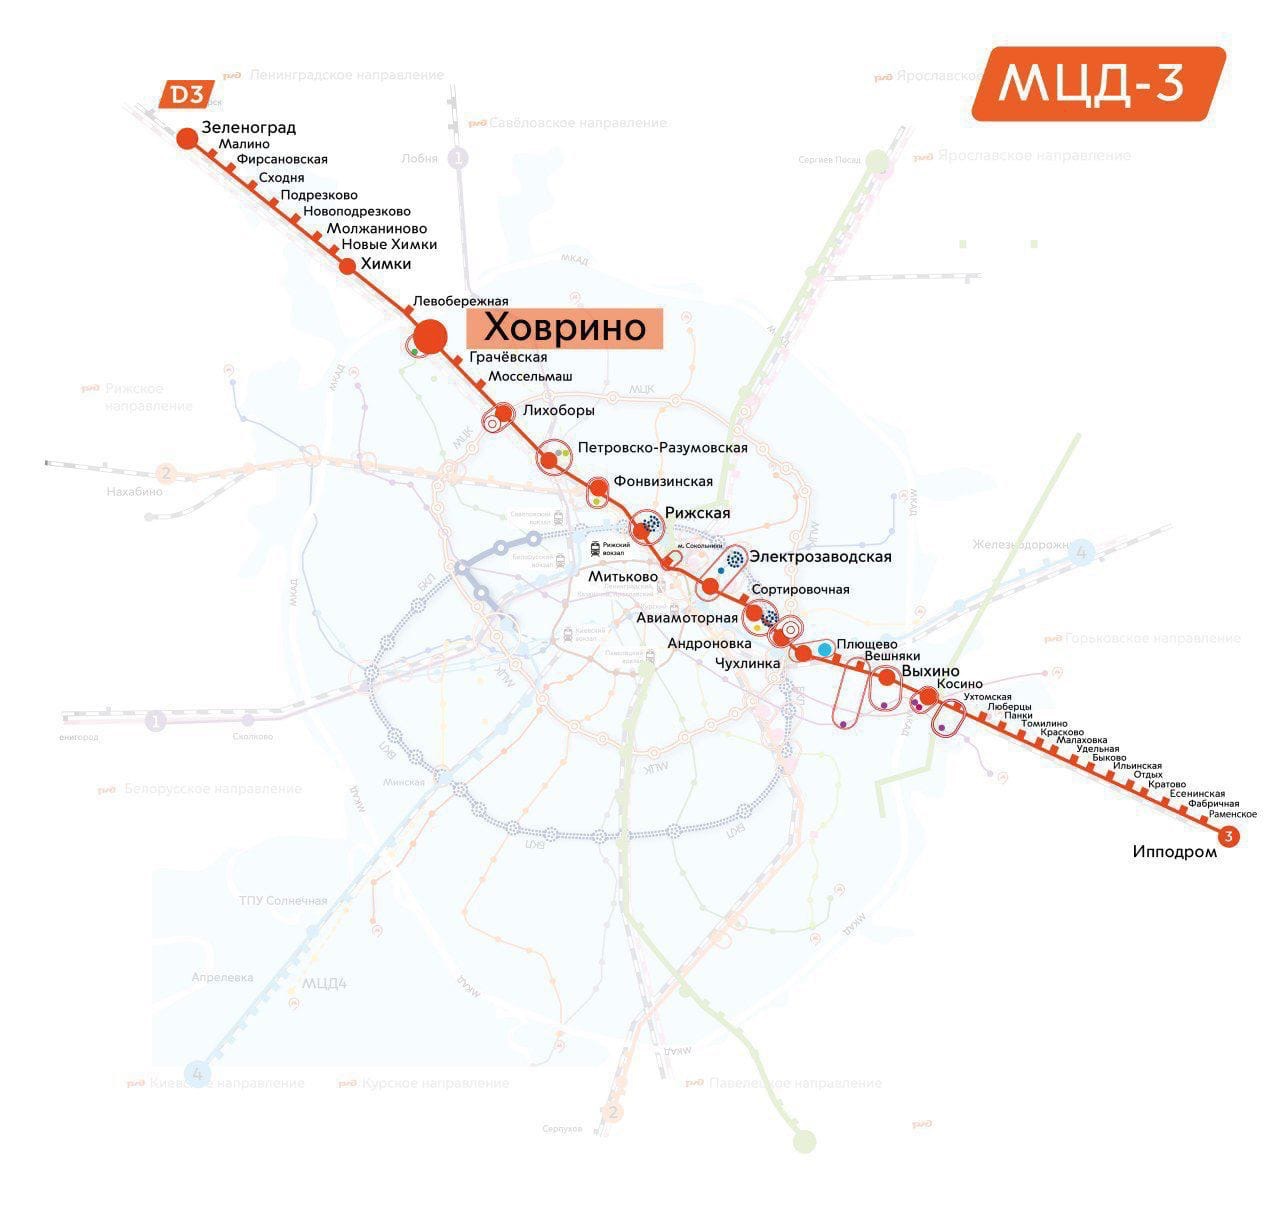 Схема мцд 3 со всеми станциями на карте москвы